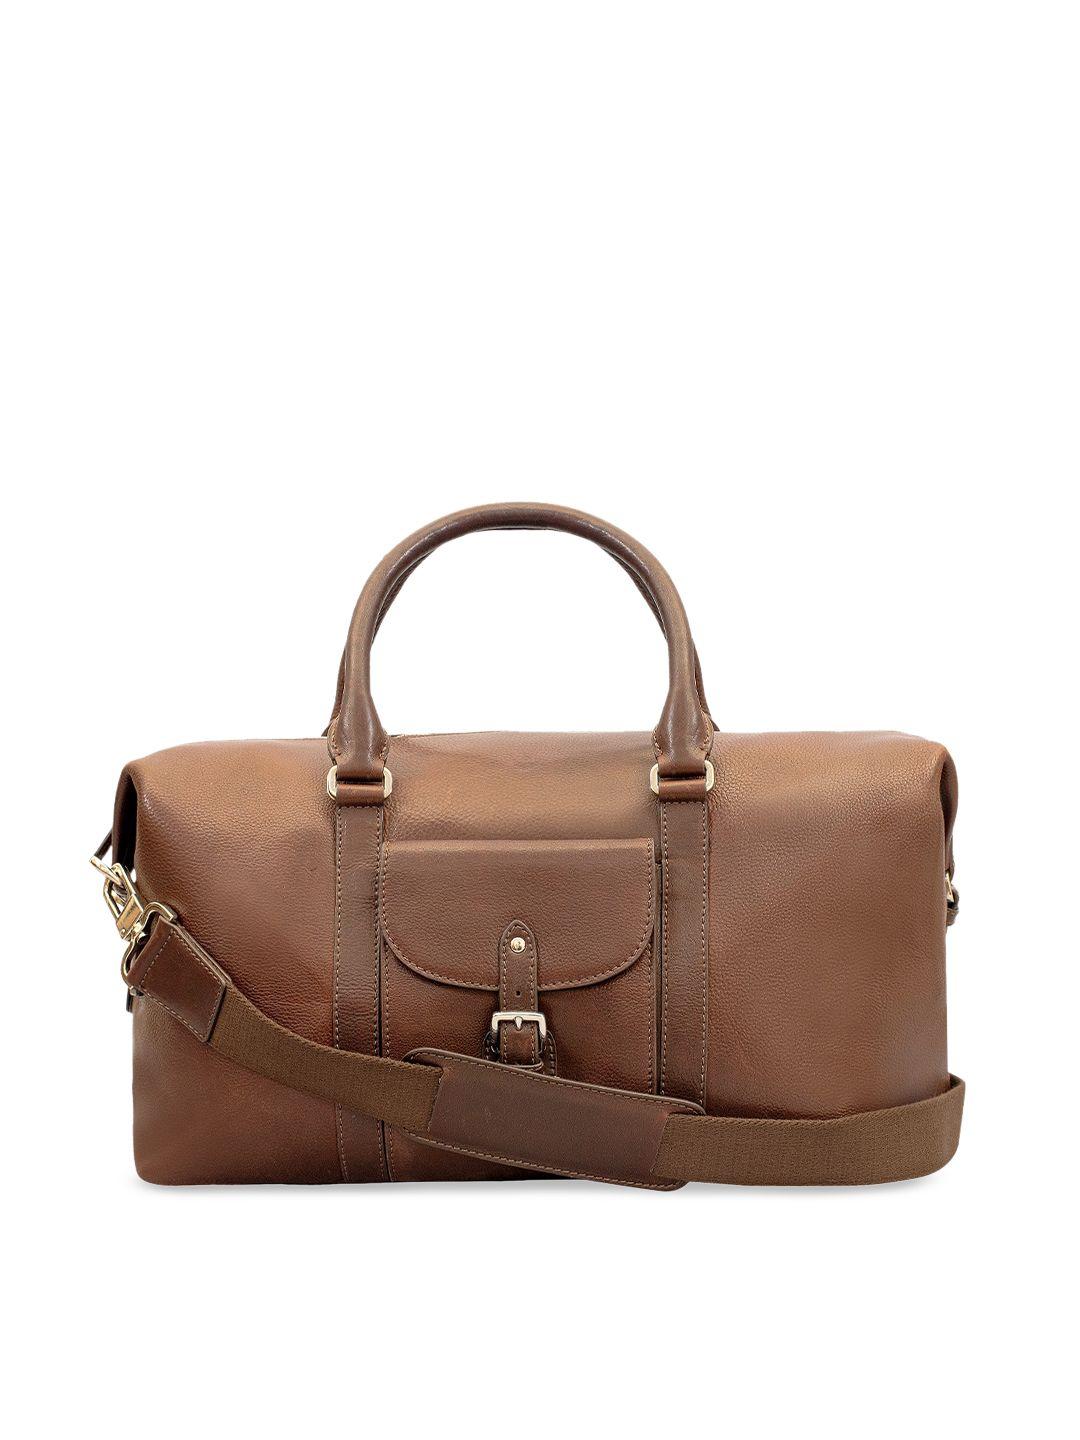 eske unisex brown solid leather duffel bag